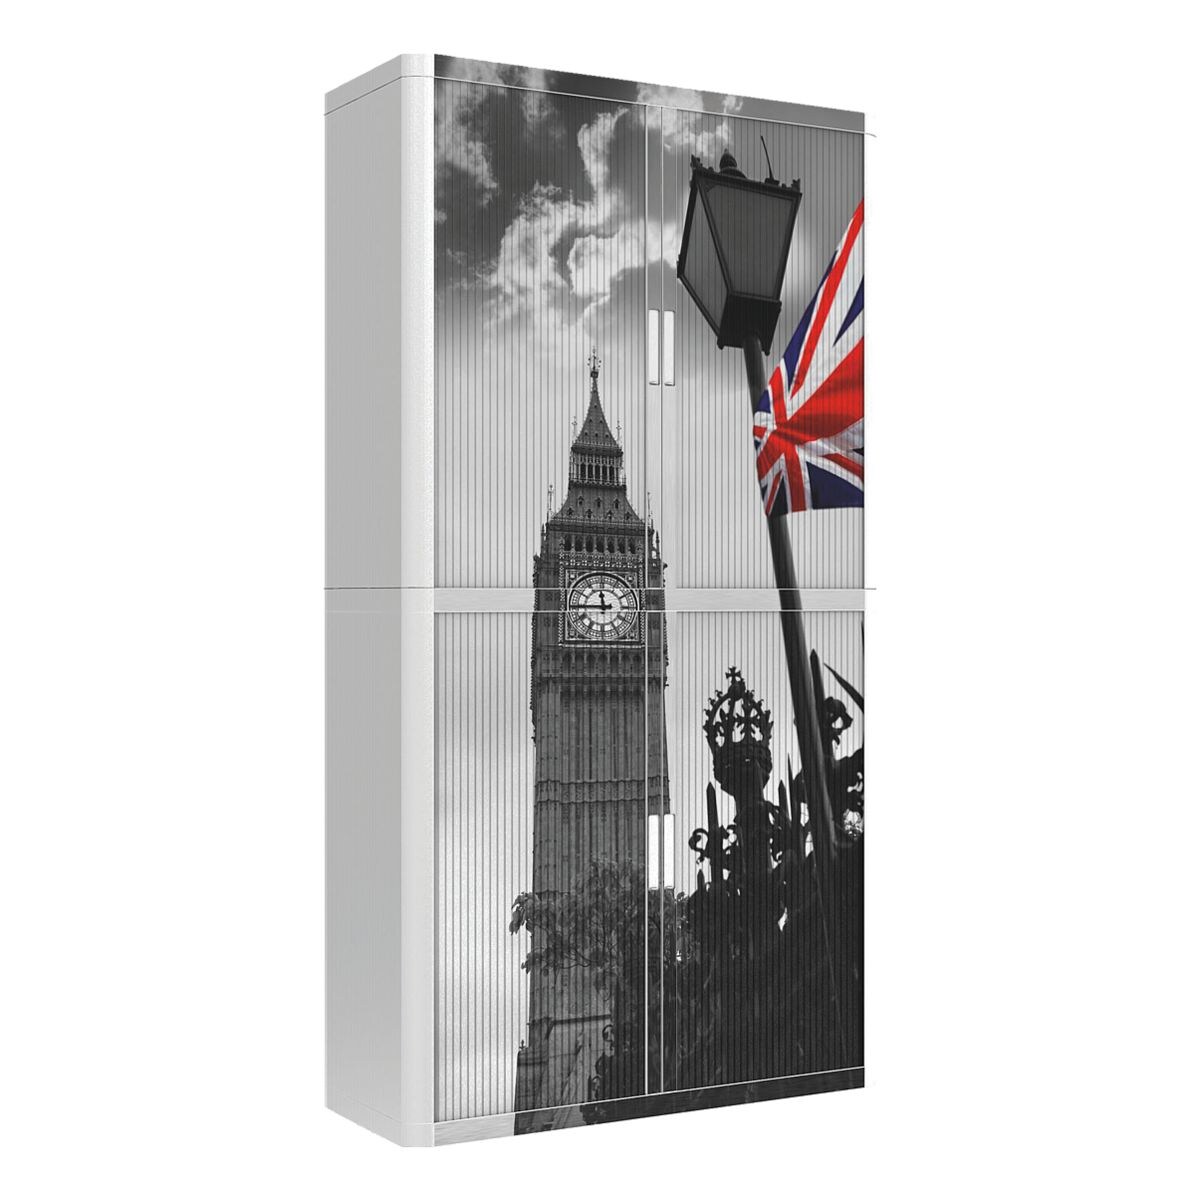 easyOffice kast met roldeuren Britse vlag voor de Big Ben (3120C) afsluitbaar, 110 x 204 cm